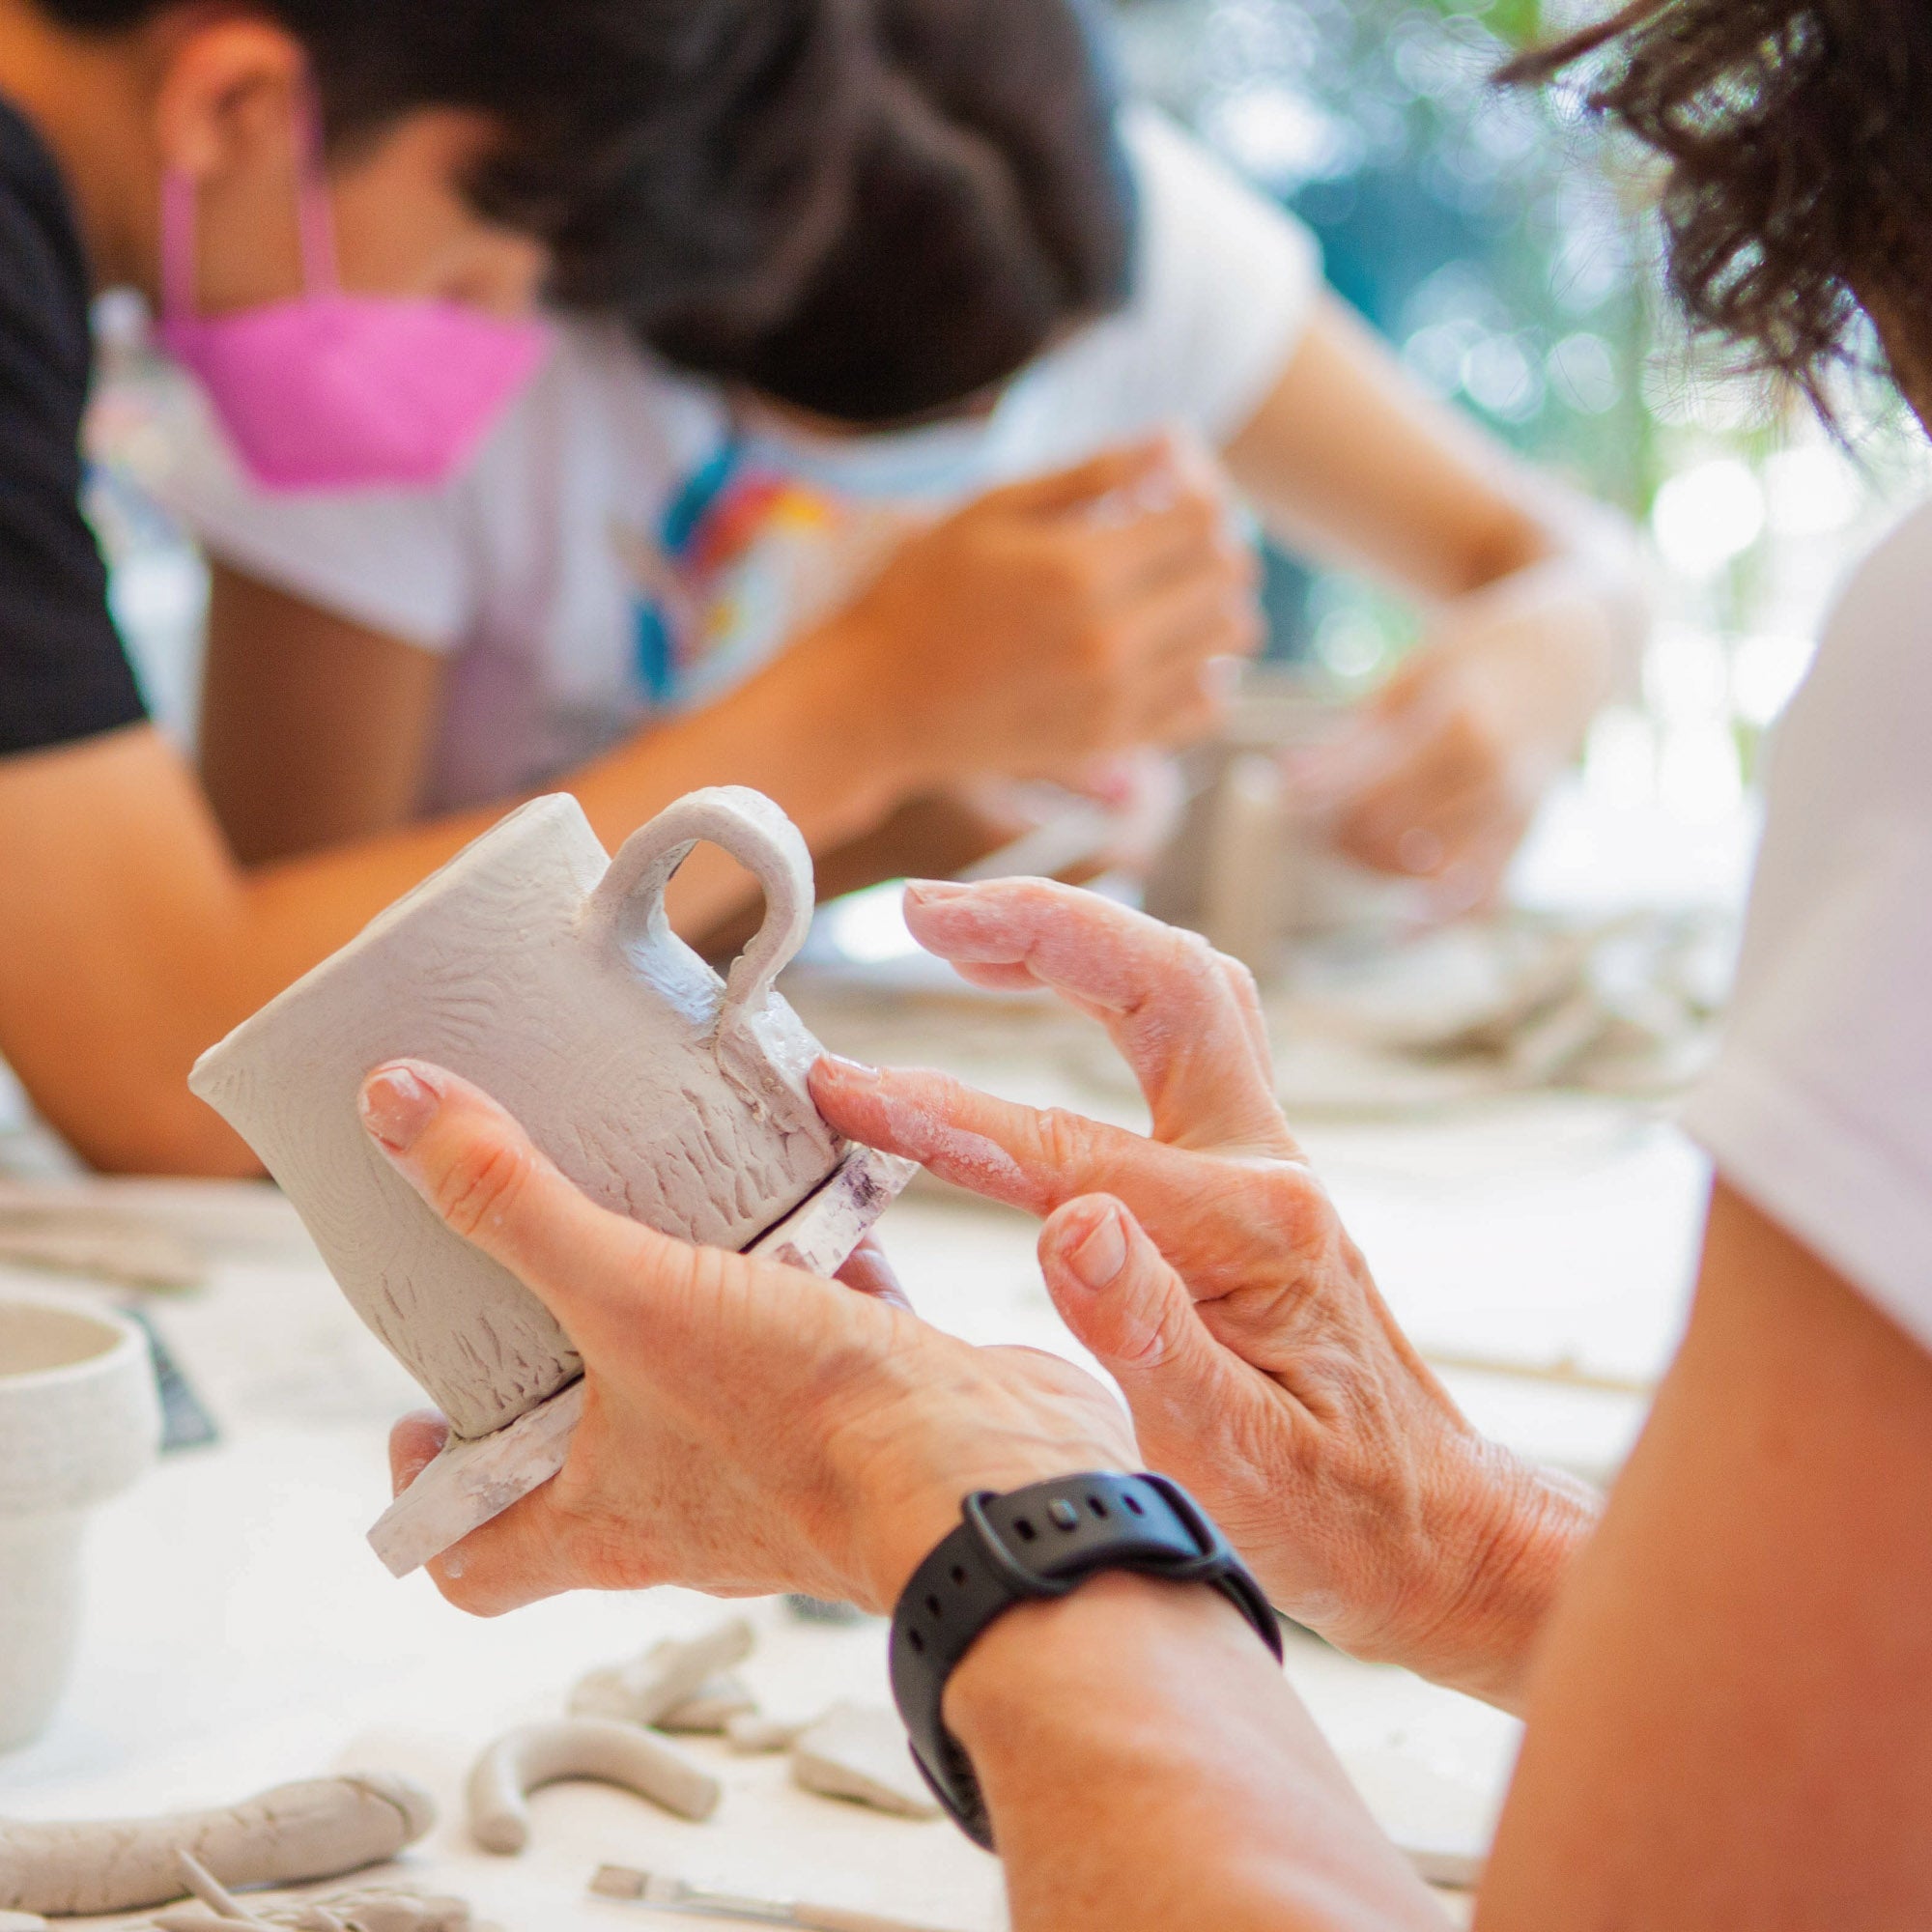 Echeri Ceramics Handmade functional pottery